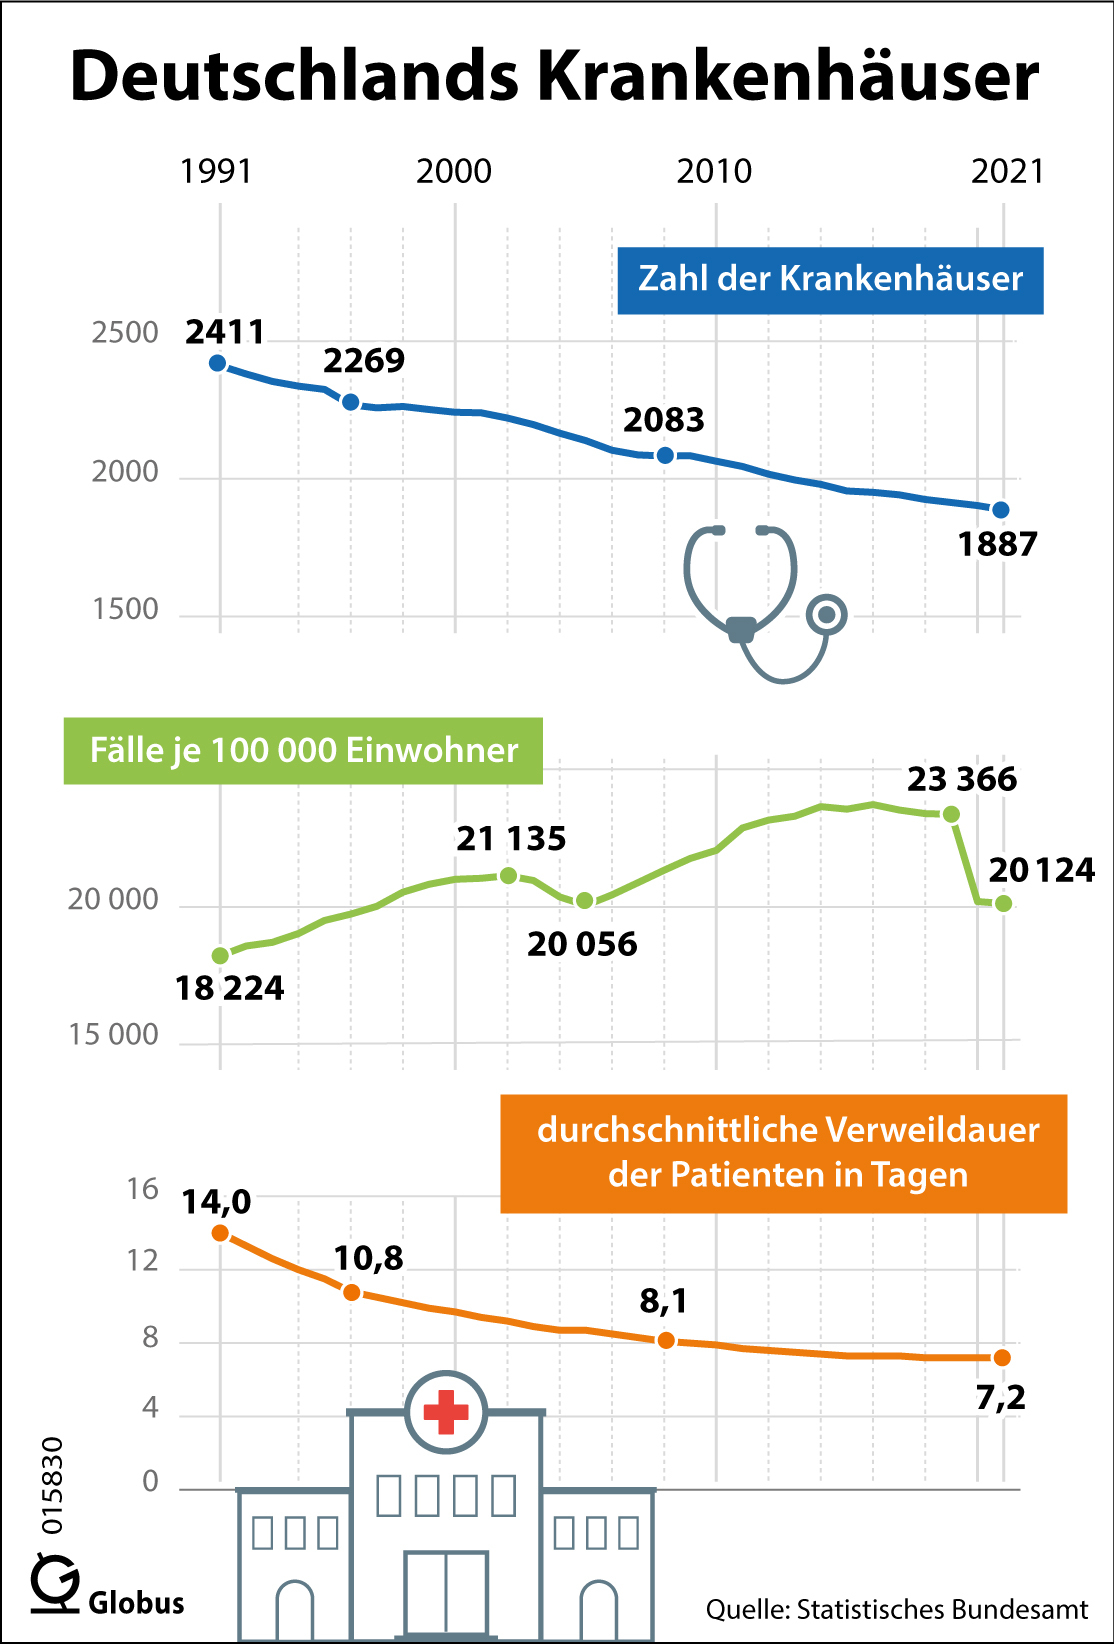 Die Zahl der Krankenhäuser in Deutschland nimmt immer weiter ab. Waren es im Jahr 1991 noch 2411, gab es 2021 mit 1887 rund 22 Prozent weniger. (Den vollständigen Text finden Sie nach dem Download der Hires-Vektor-Datei bzw. der Hires-Datei im PDF-Dokument.) Gestiegen ist dagegen die Zahl der Behandlungsfälle: Im Jahr 1991 waren es insgesamt 14,6 Millionen, was rechnerisch 18 224 Fällen je 100 000 Einwohner entspricht, und 2021 waren es 16,7 Millionen Patienten, die versorgt werden mussten (20 124 Fälle je 100 000 Einwohner). Dies zeigt, dass in den vergangen 30 Jahren eine deutliche Konzentration stattgefunden hat. Unter anderem ist eine Folge davon, dass die Patienten immer früher entlassen werden: Blieb ein Patient im Jahr 1991 durchschnittlich 14 Tage in der Klinik, ging er 2021 bereits nach der Hälfte der Zeit wieder nach Hause. Den höchsten Wert an Fällen je 100 000 Einwohner hat es mit 23 720 im Jahr 2016 gegeben. Zu einem starken Einbruch der Fallzahl kam es 2020 infolge der Corona-Pandemie. So hatten zum Beispiel das Freihalten von Betten und die verschärften Hygienekonzepte zur Folge, dass weniger planbare Behandlungen durchgeführt wurden. Zudem haben viele Menschen vermutlich Krankenhausaufenthalte vermieden, soweit diese als nicht unbedingt notwendig erachtet wurden. Grafik: Athanassios Zafirlis, Sven Stein, Redaktion: Dr. Bettina Jütte, Datenerhebung: jährlich, voraussichtlich nächste Daten: August 2019